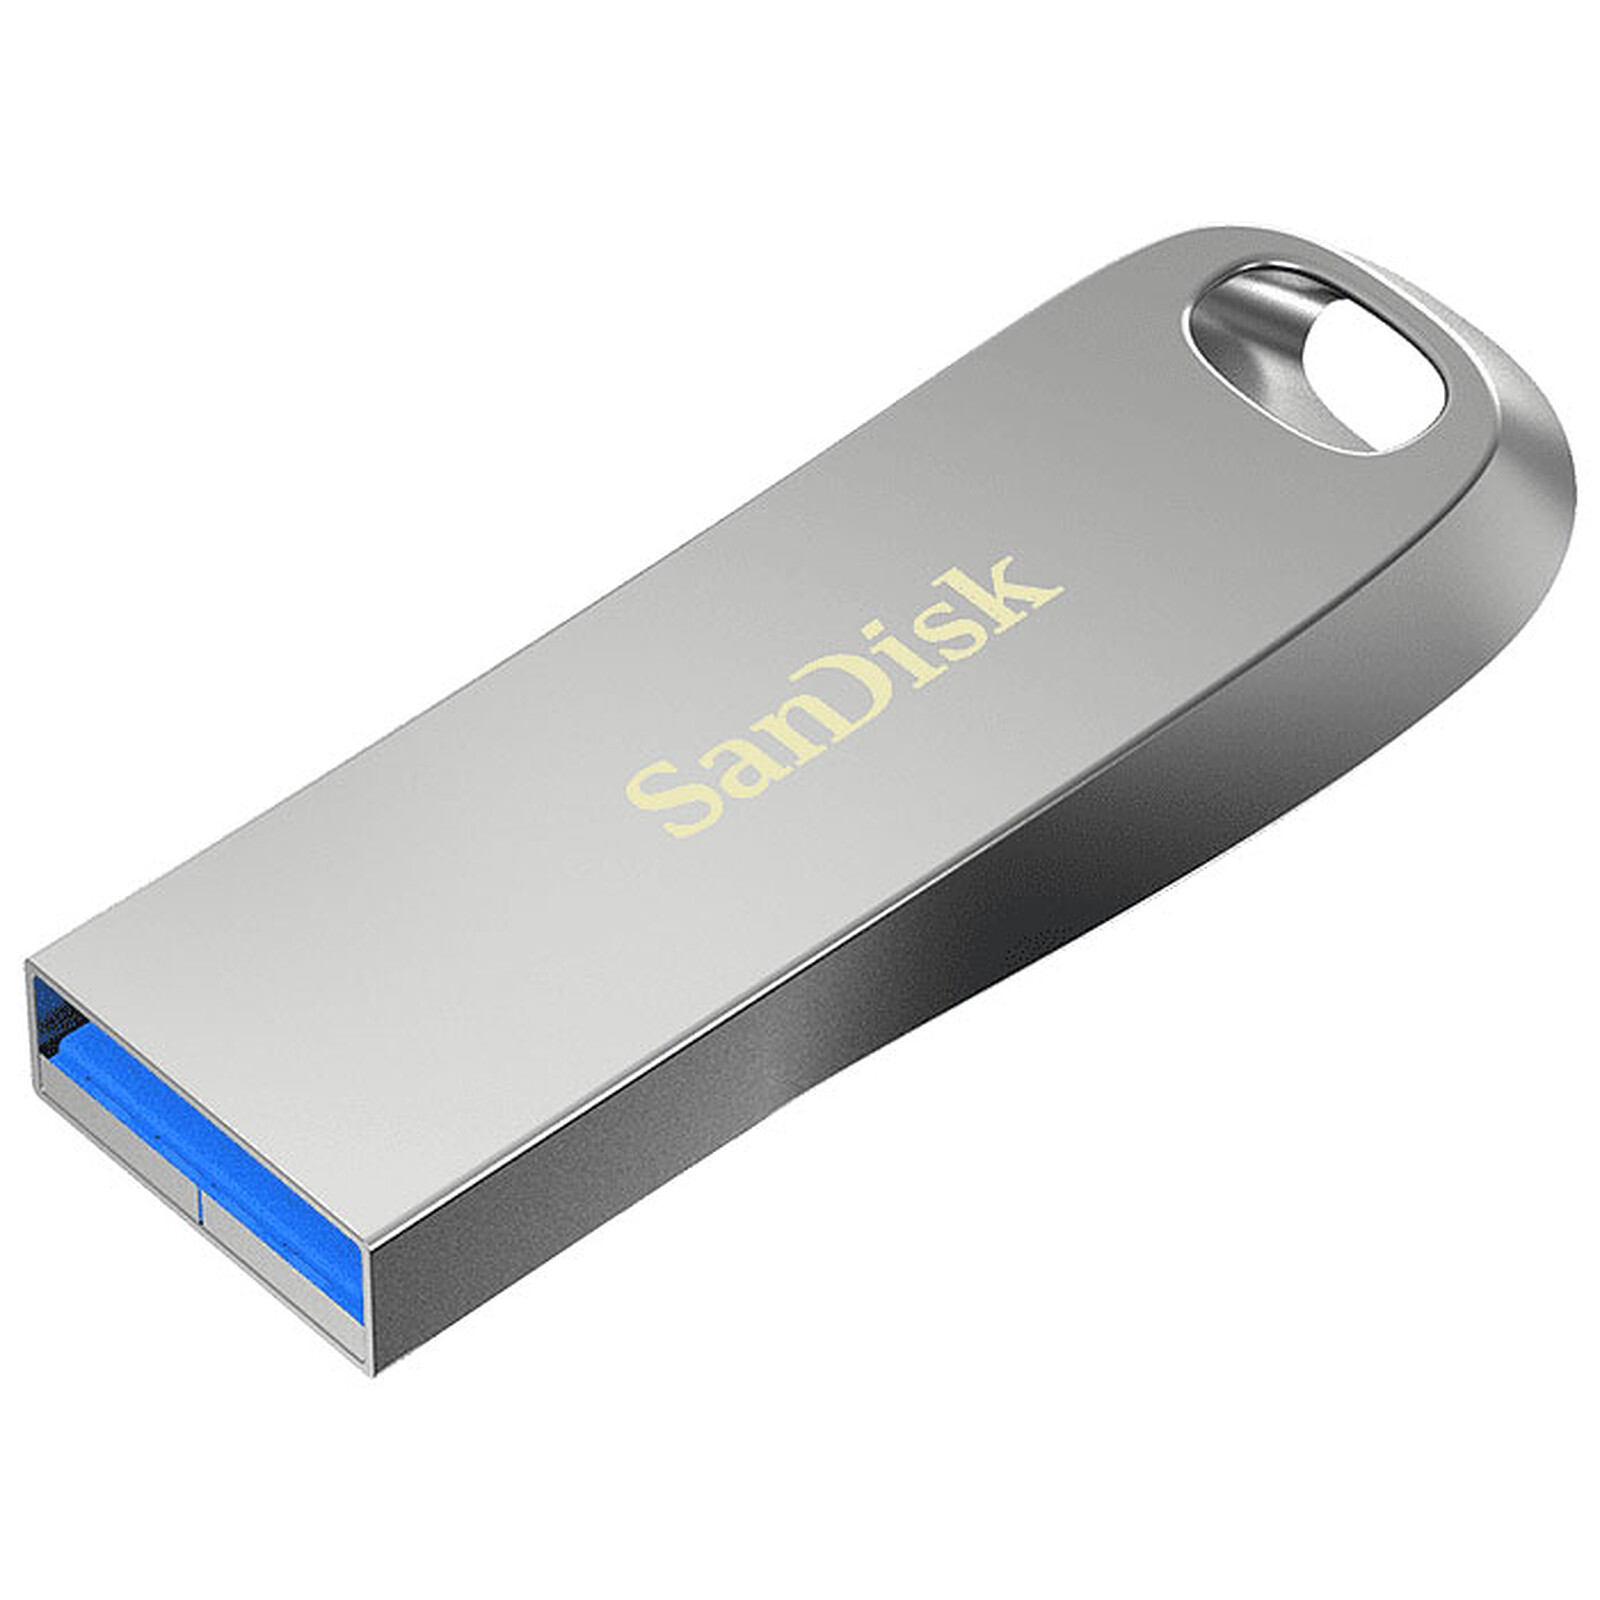 SanDisk : cette clé USB 128 Go voit son prix s'effondrer